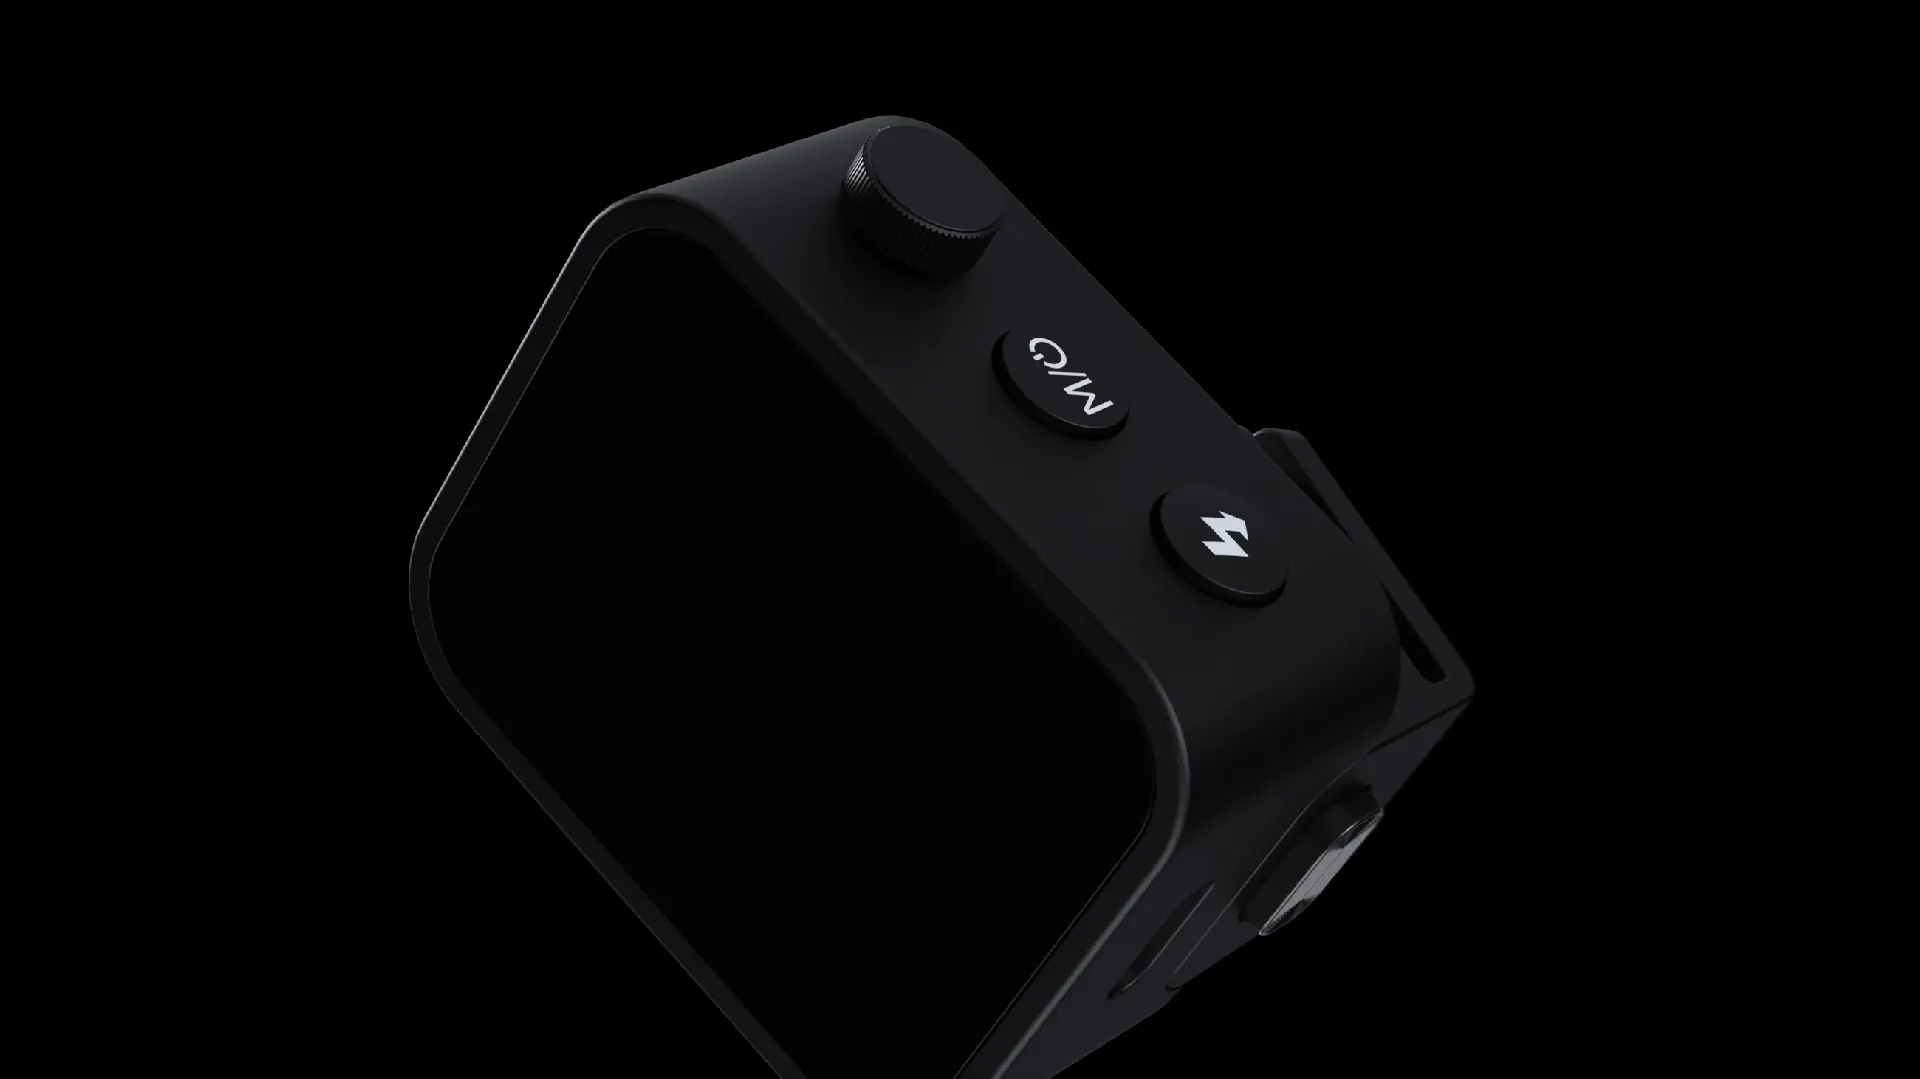 Godox ra mắt trigger Godox Xnano nhỏ gọn và tiện lợi với màn hình cảm ứng